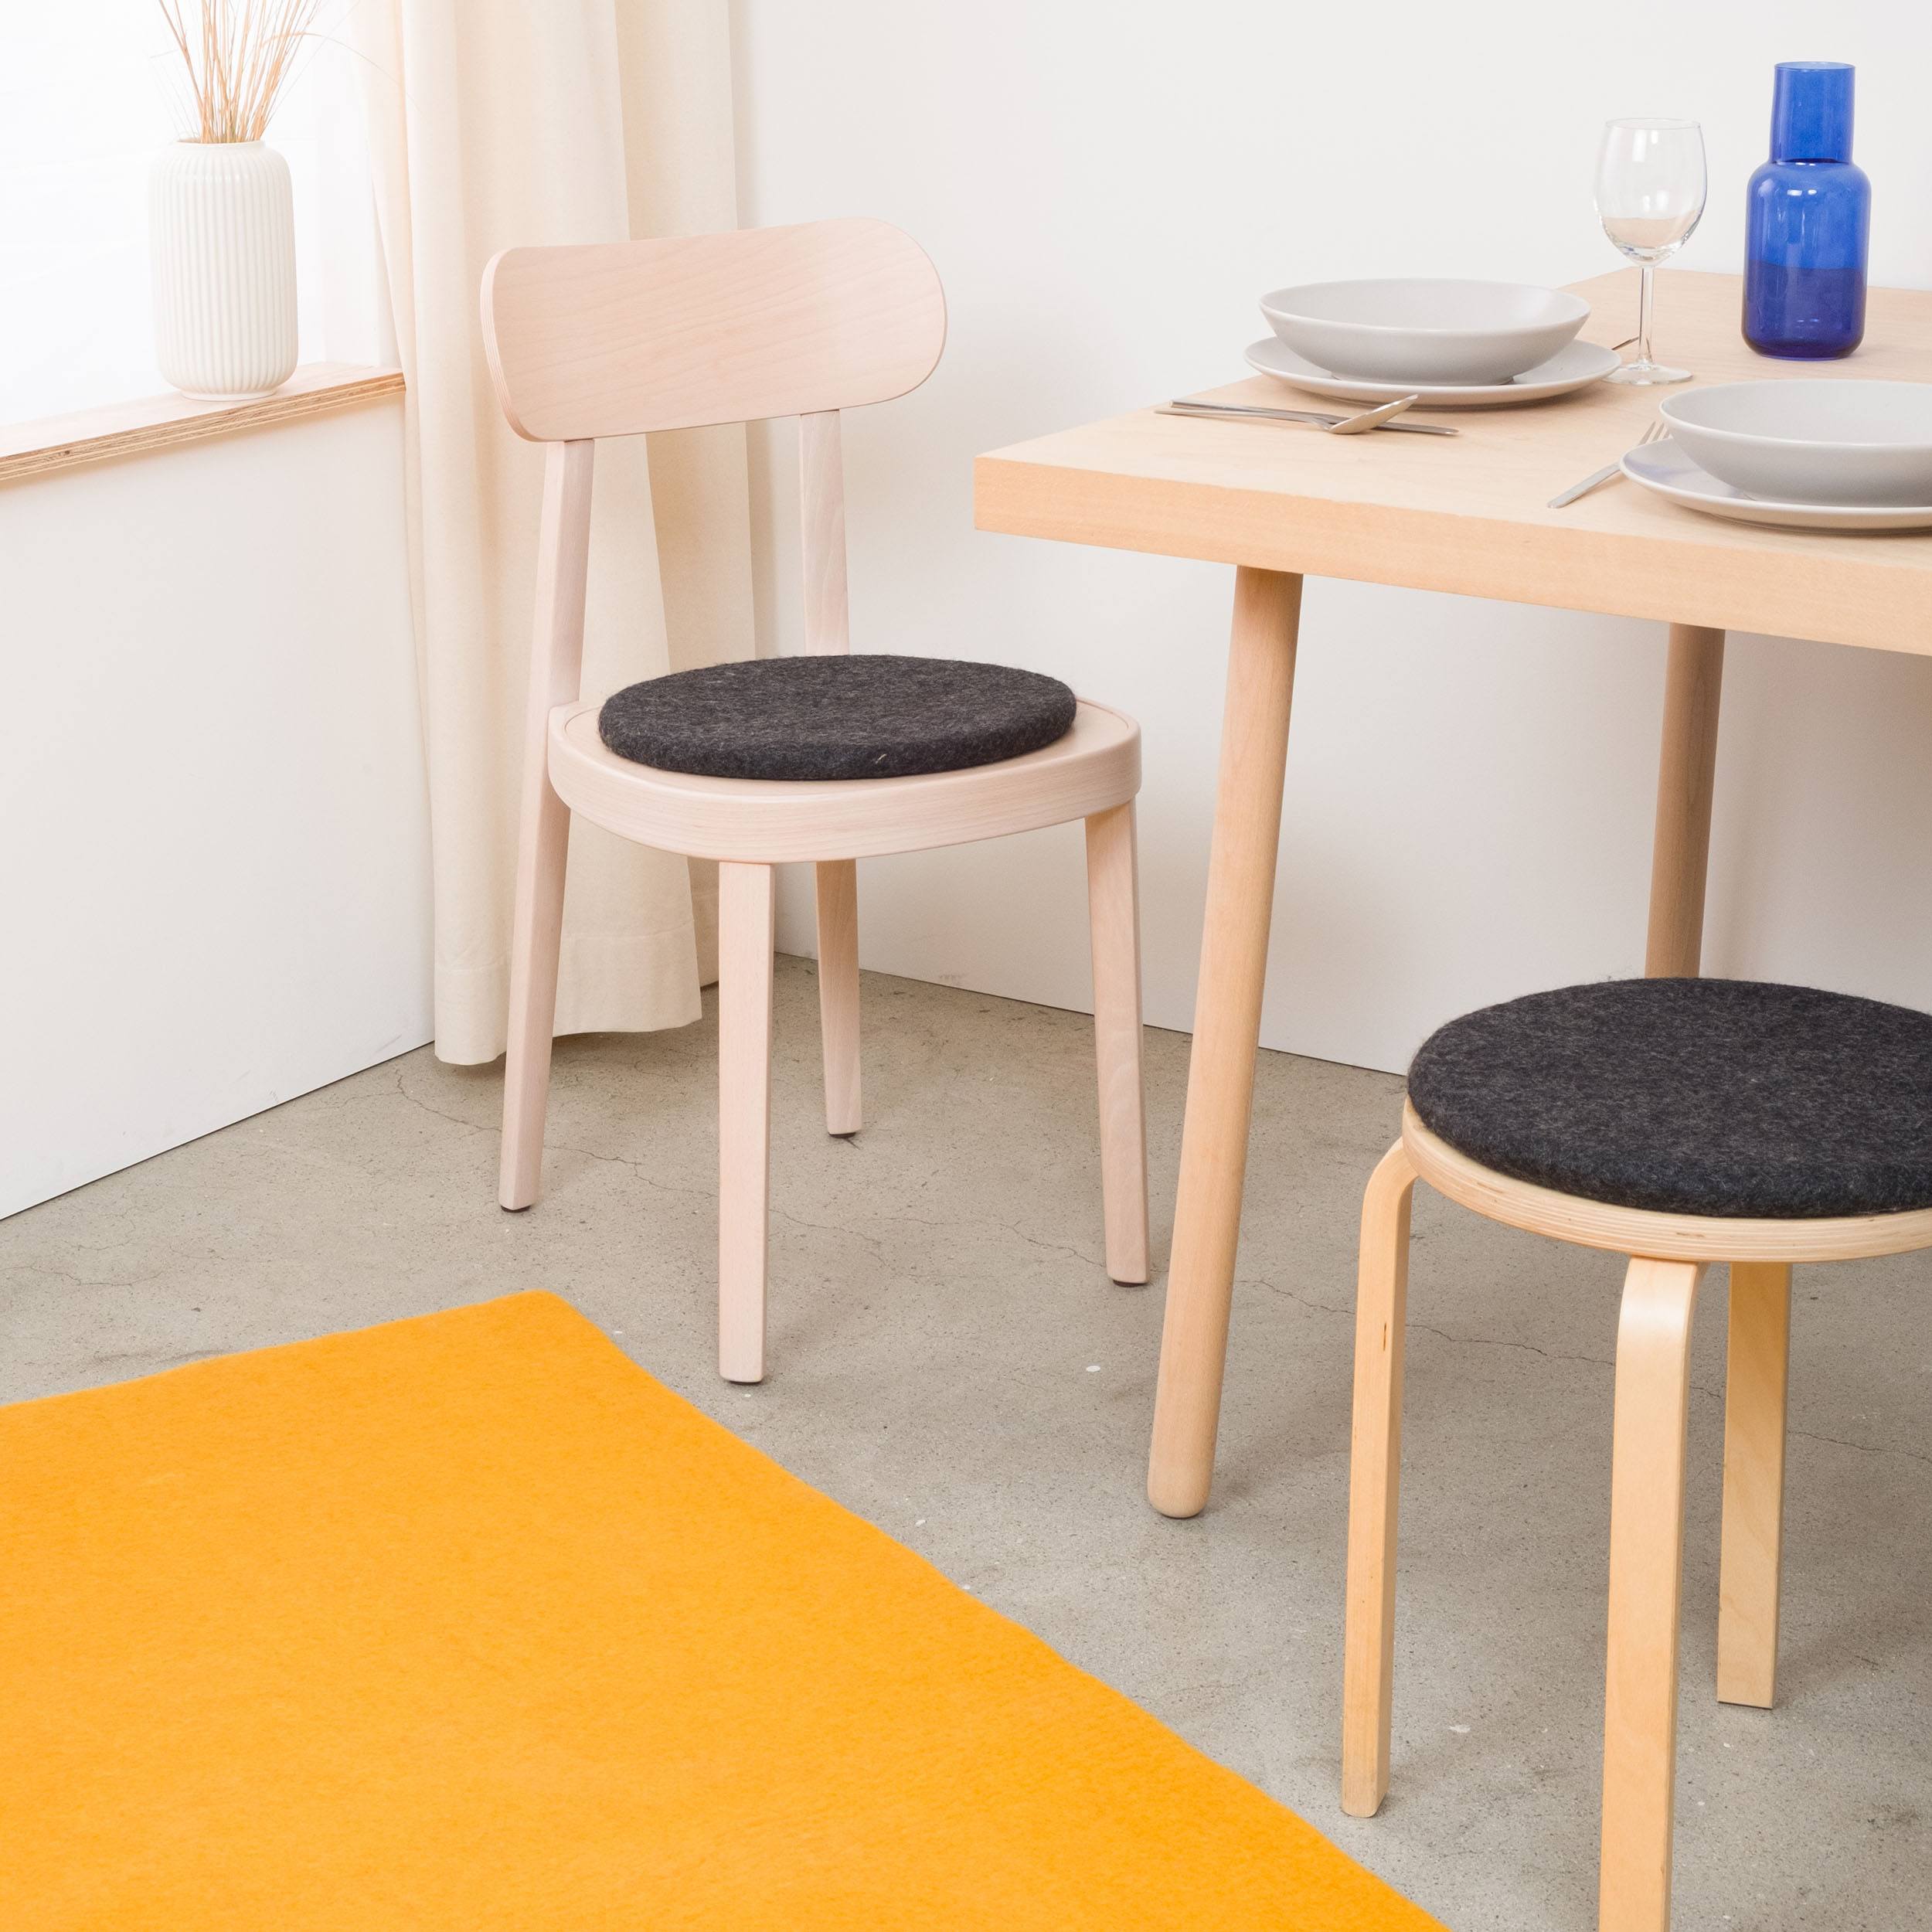 Flat Sitzauflage von myfelt im ikarus…design shop